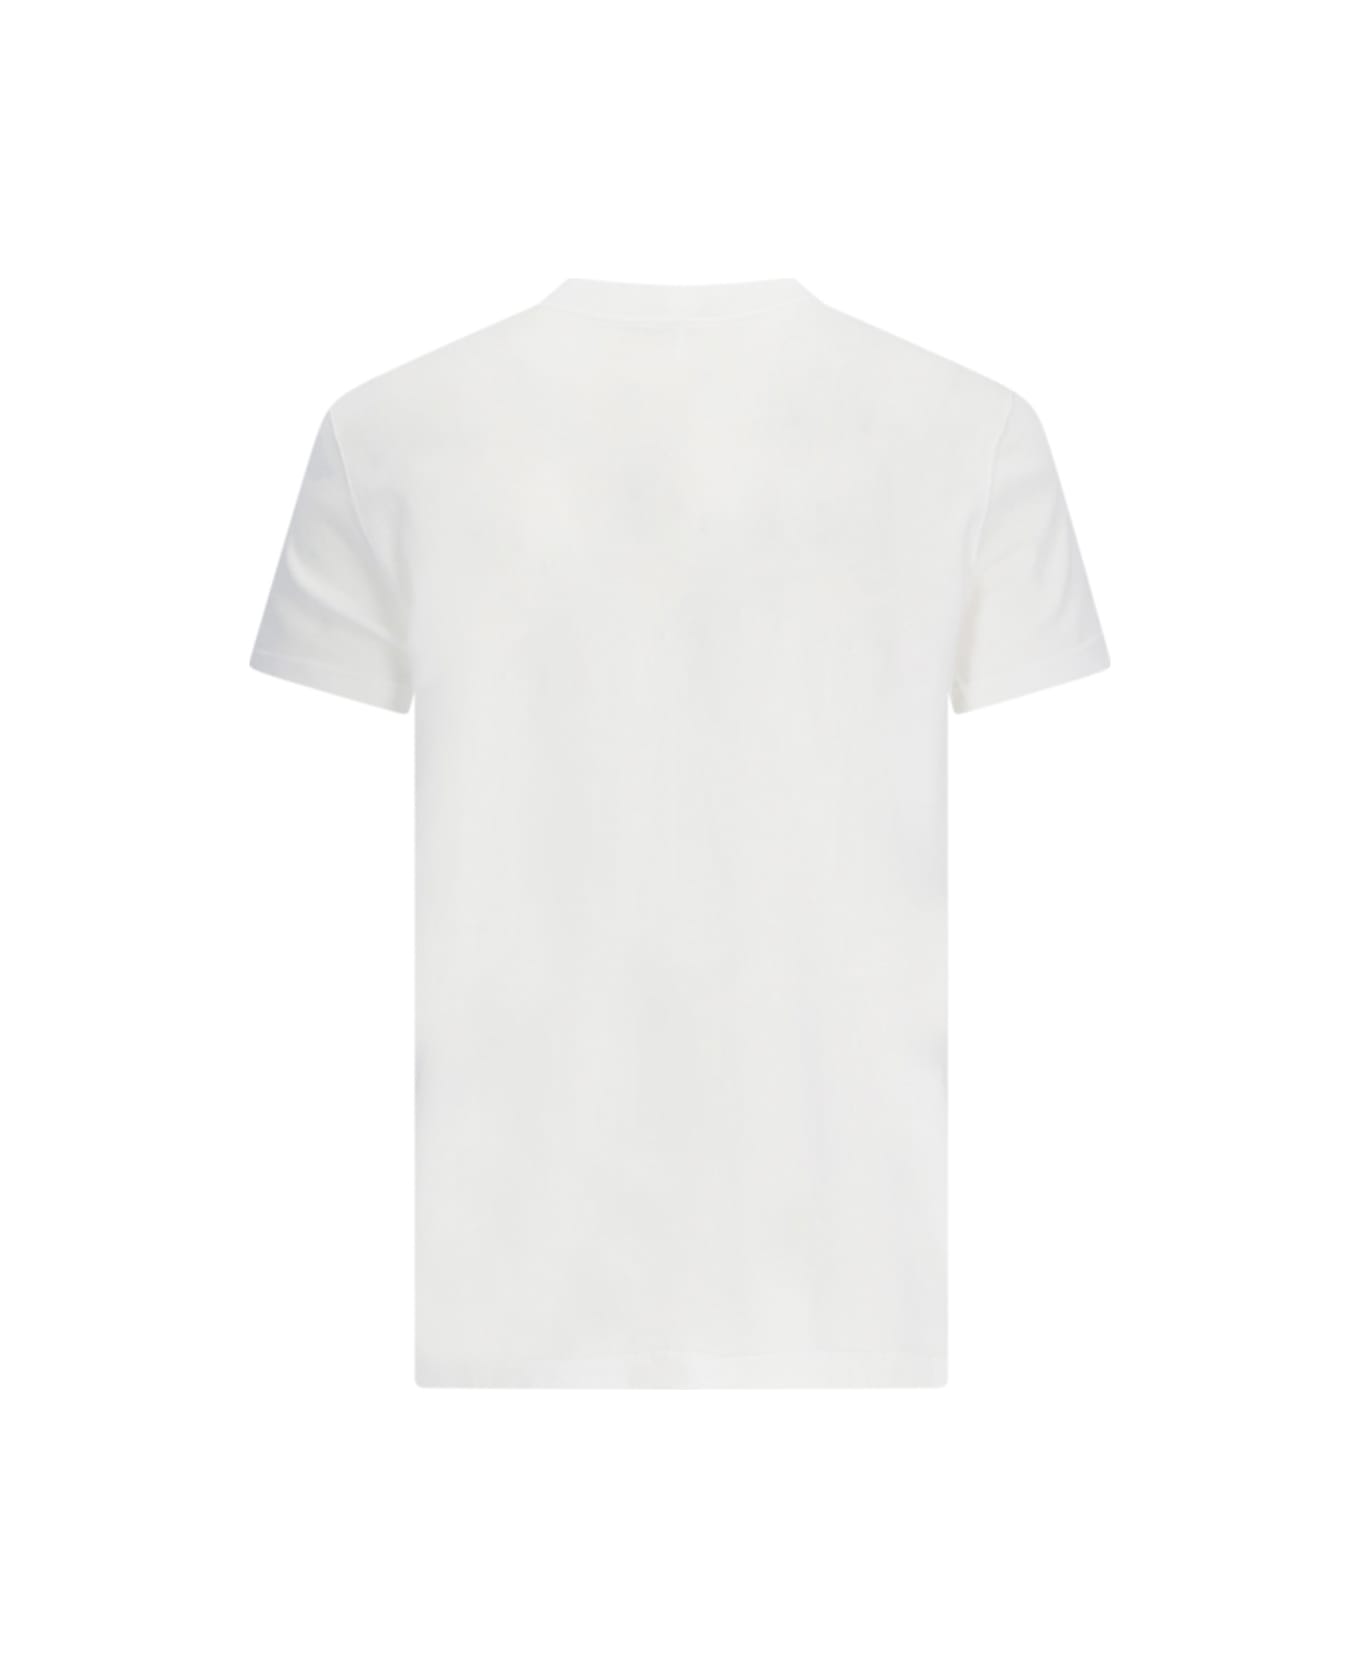 DRKSHDW T-shirt - White